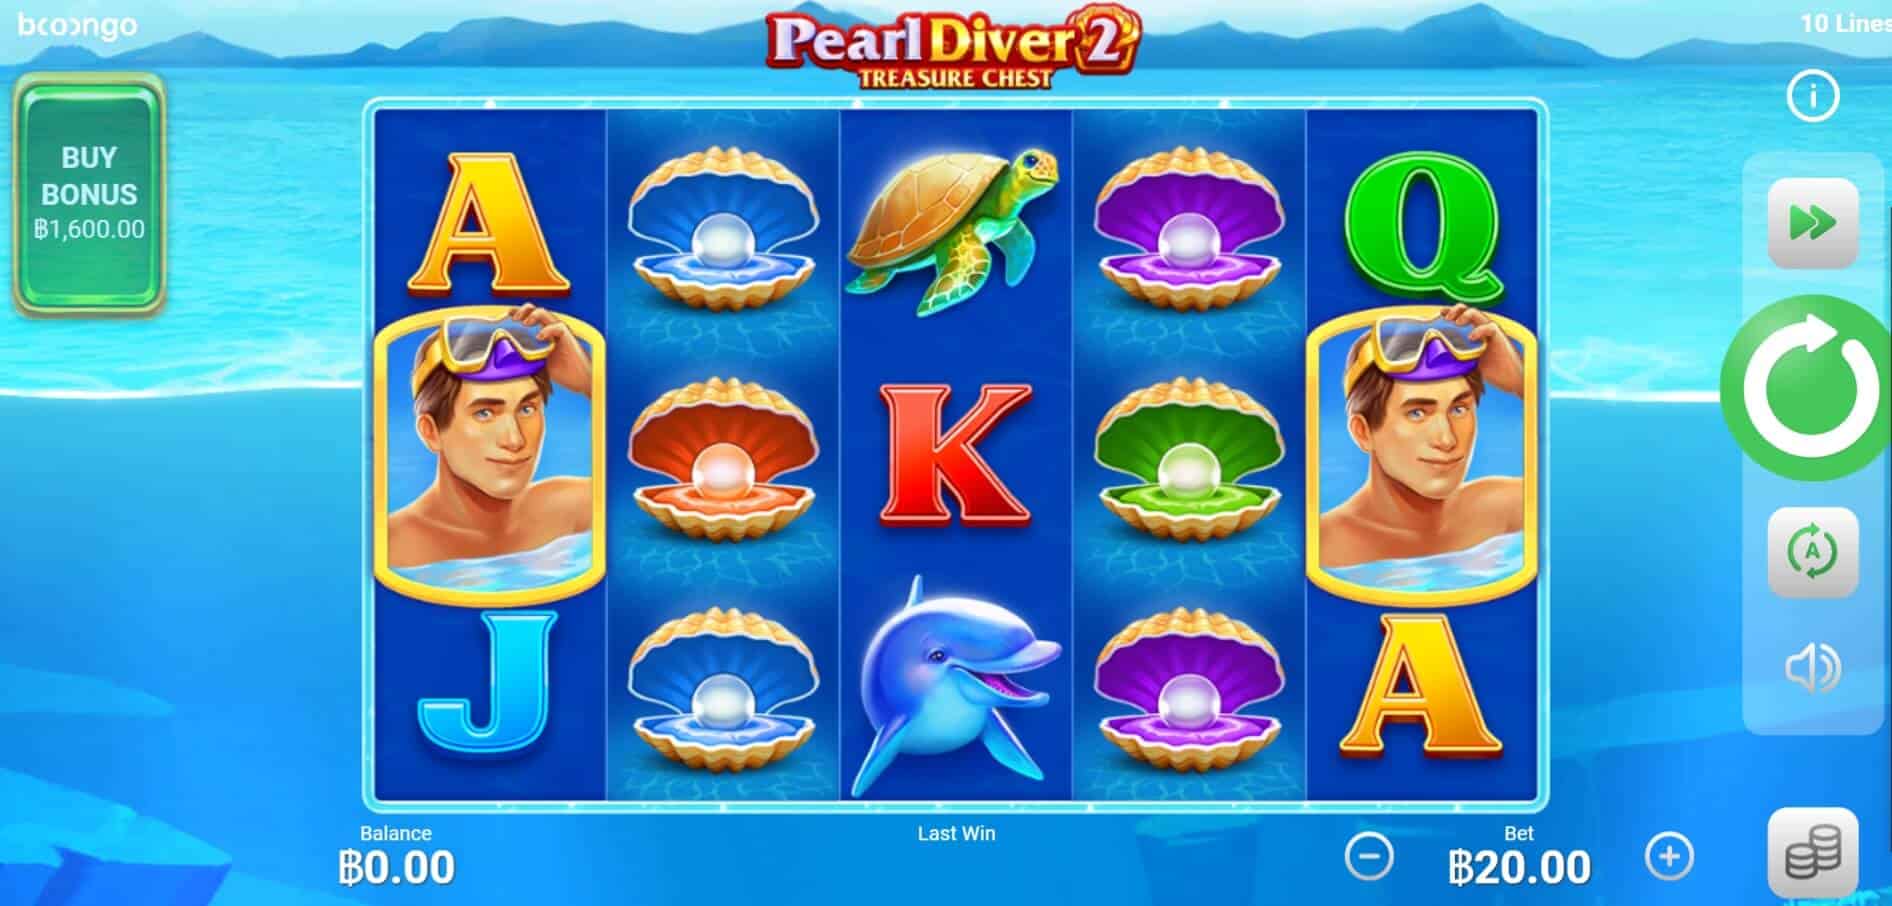 Pearl Diver 2 Treasure Chest BOOONGO SLOTXO1234